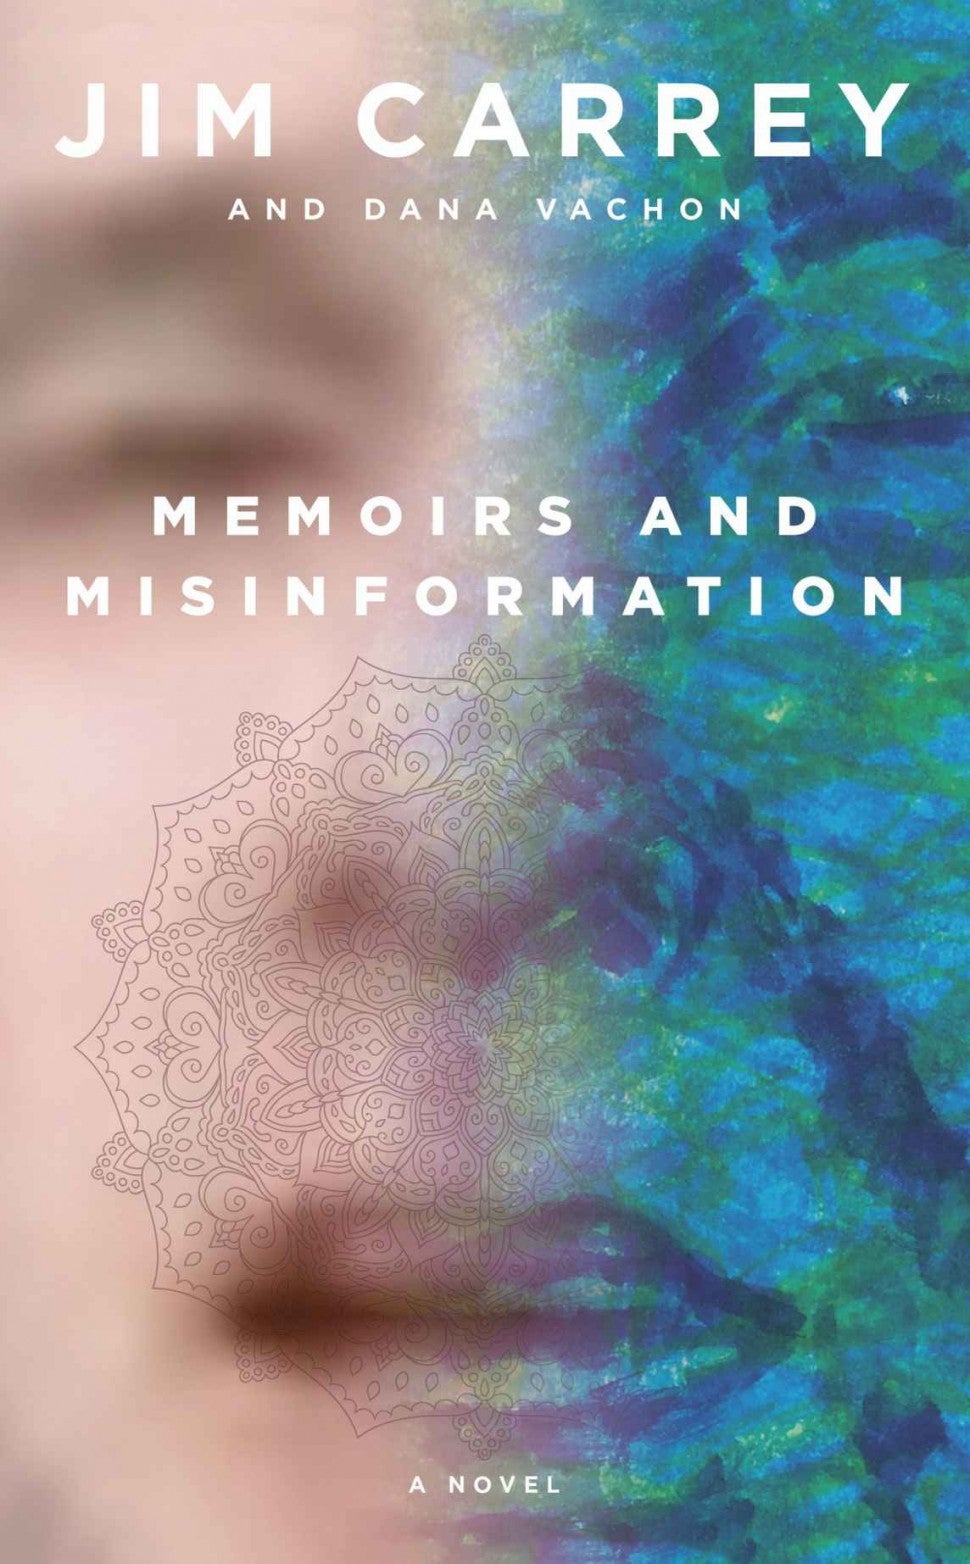 Jim Carrey's 'Memoirs and Misinformation'